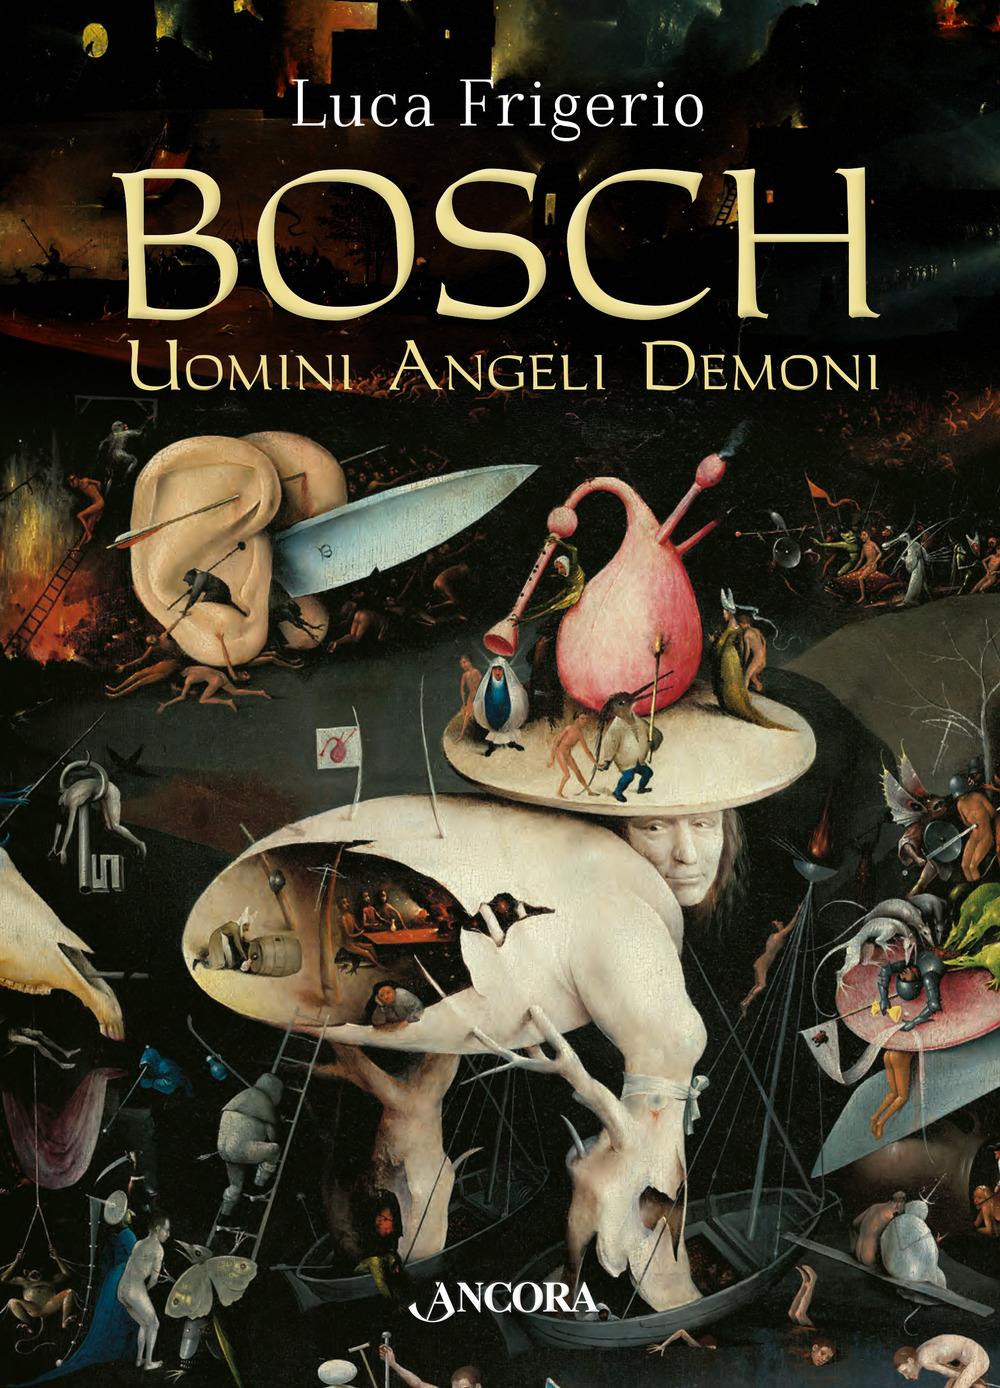 Libri Luca Frigerio - Bosch. Uomini Angeli Demoni NUOVO SIGILLATO, EDIZIONE DEL 30/03/2017 SUBITO DISPONIBILE